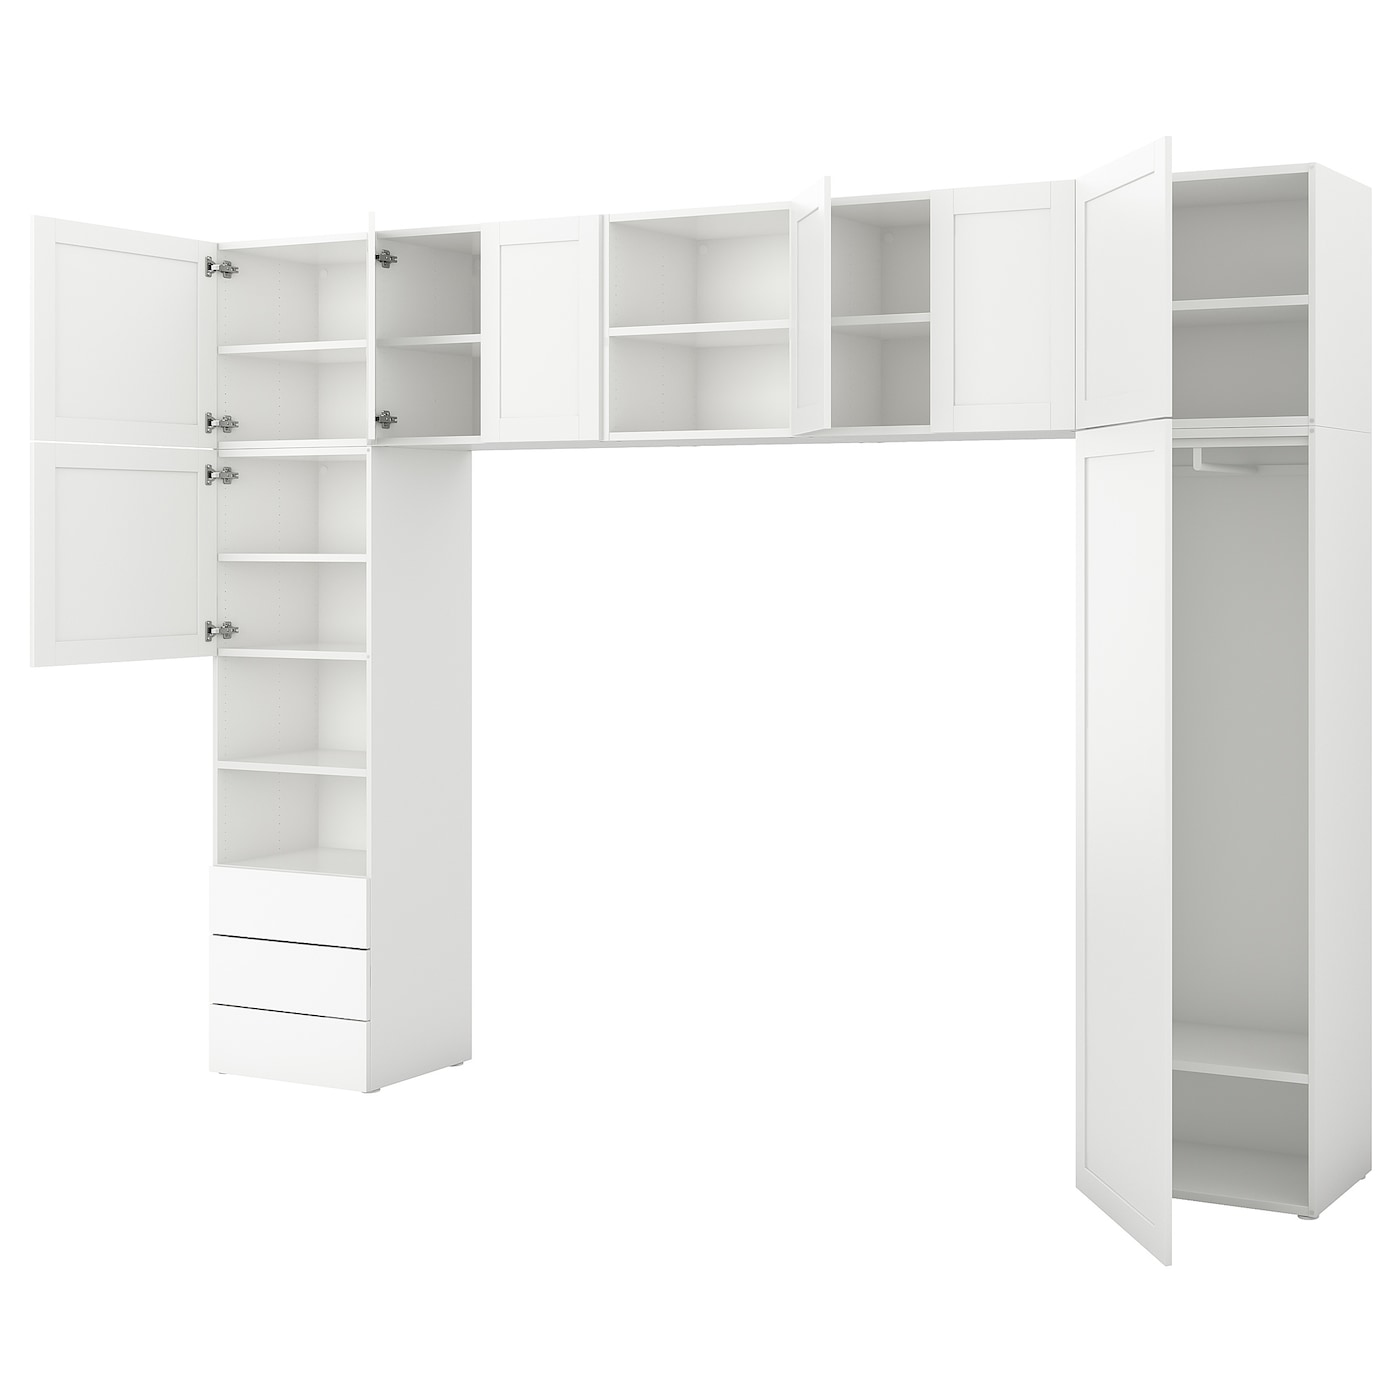 Платяной шкаф - PLATSA/IKEA/ ПЛАТСА ИКЕА,340x42x241 см, белый